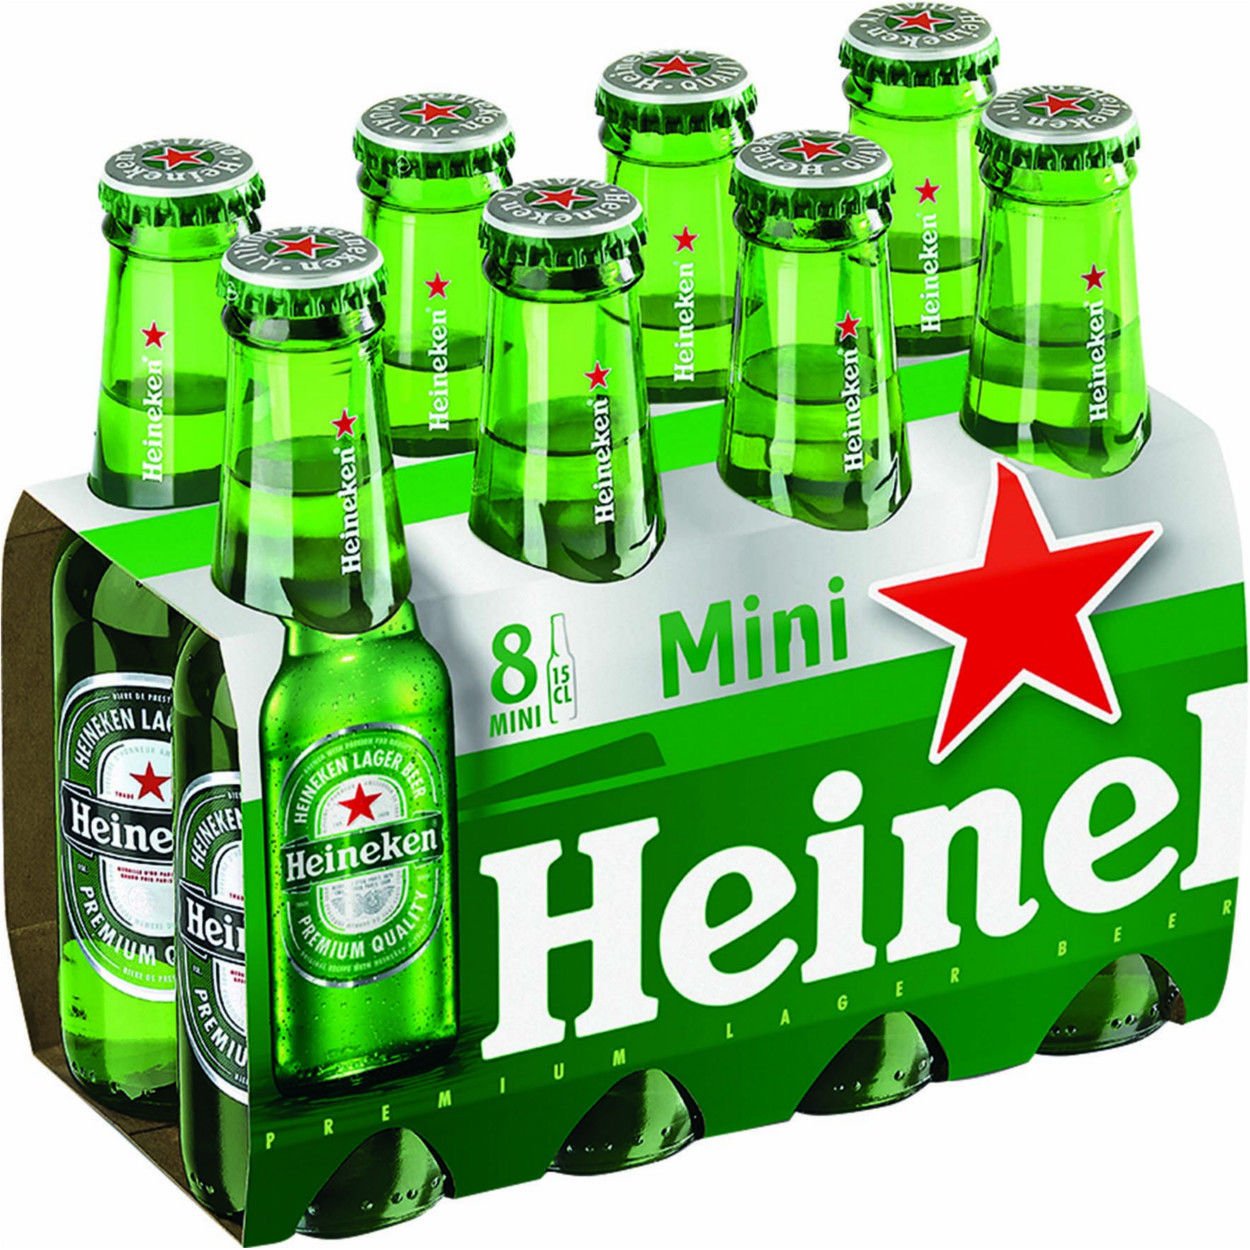 Rodoors Slovakia Heineken Beer 8 X 3 X 15 Cl Vap Ean Shelf Life 12 Months 3840 Bottl Per Pallet Price 0 41eur Exw Napoli Italy Heineken 6 X 4